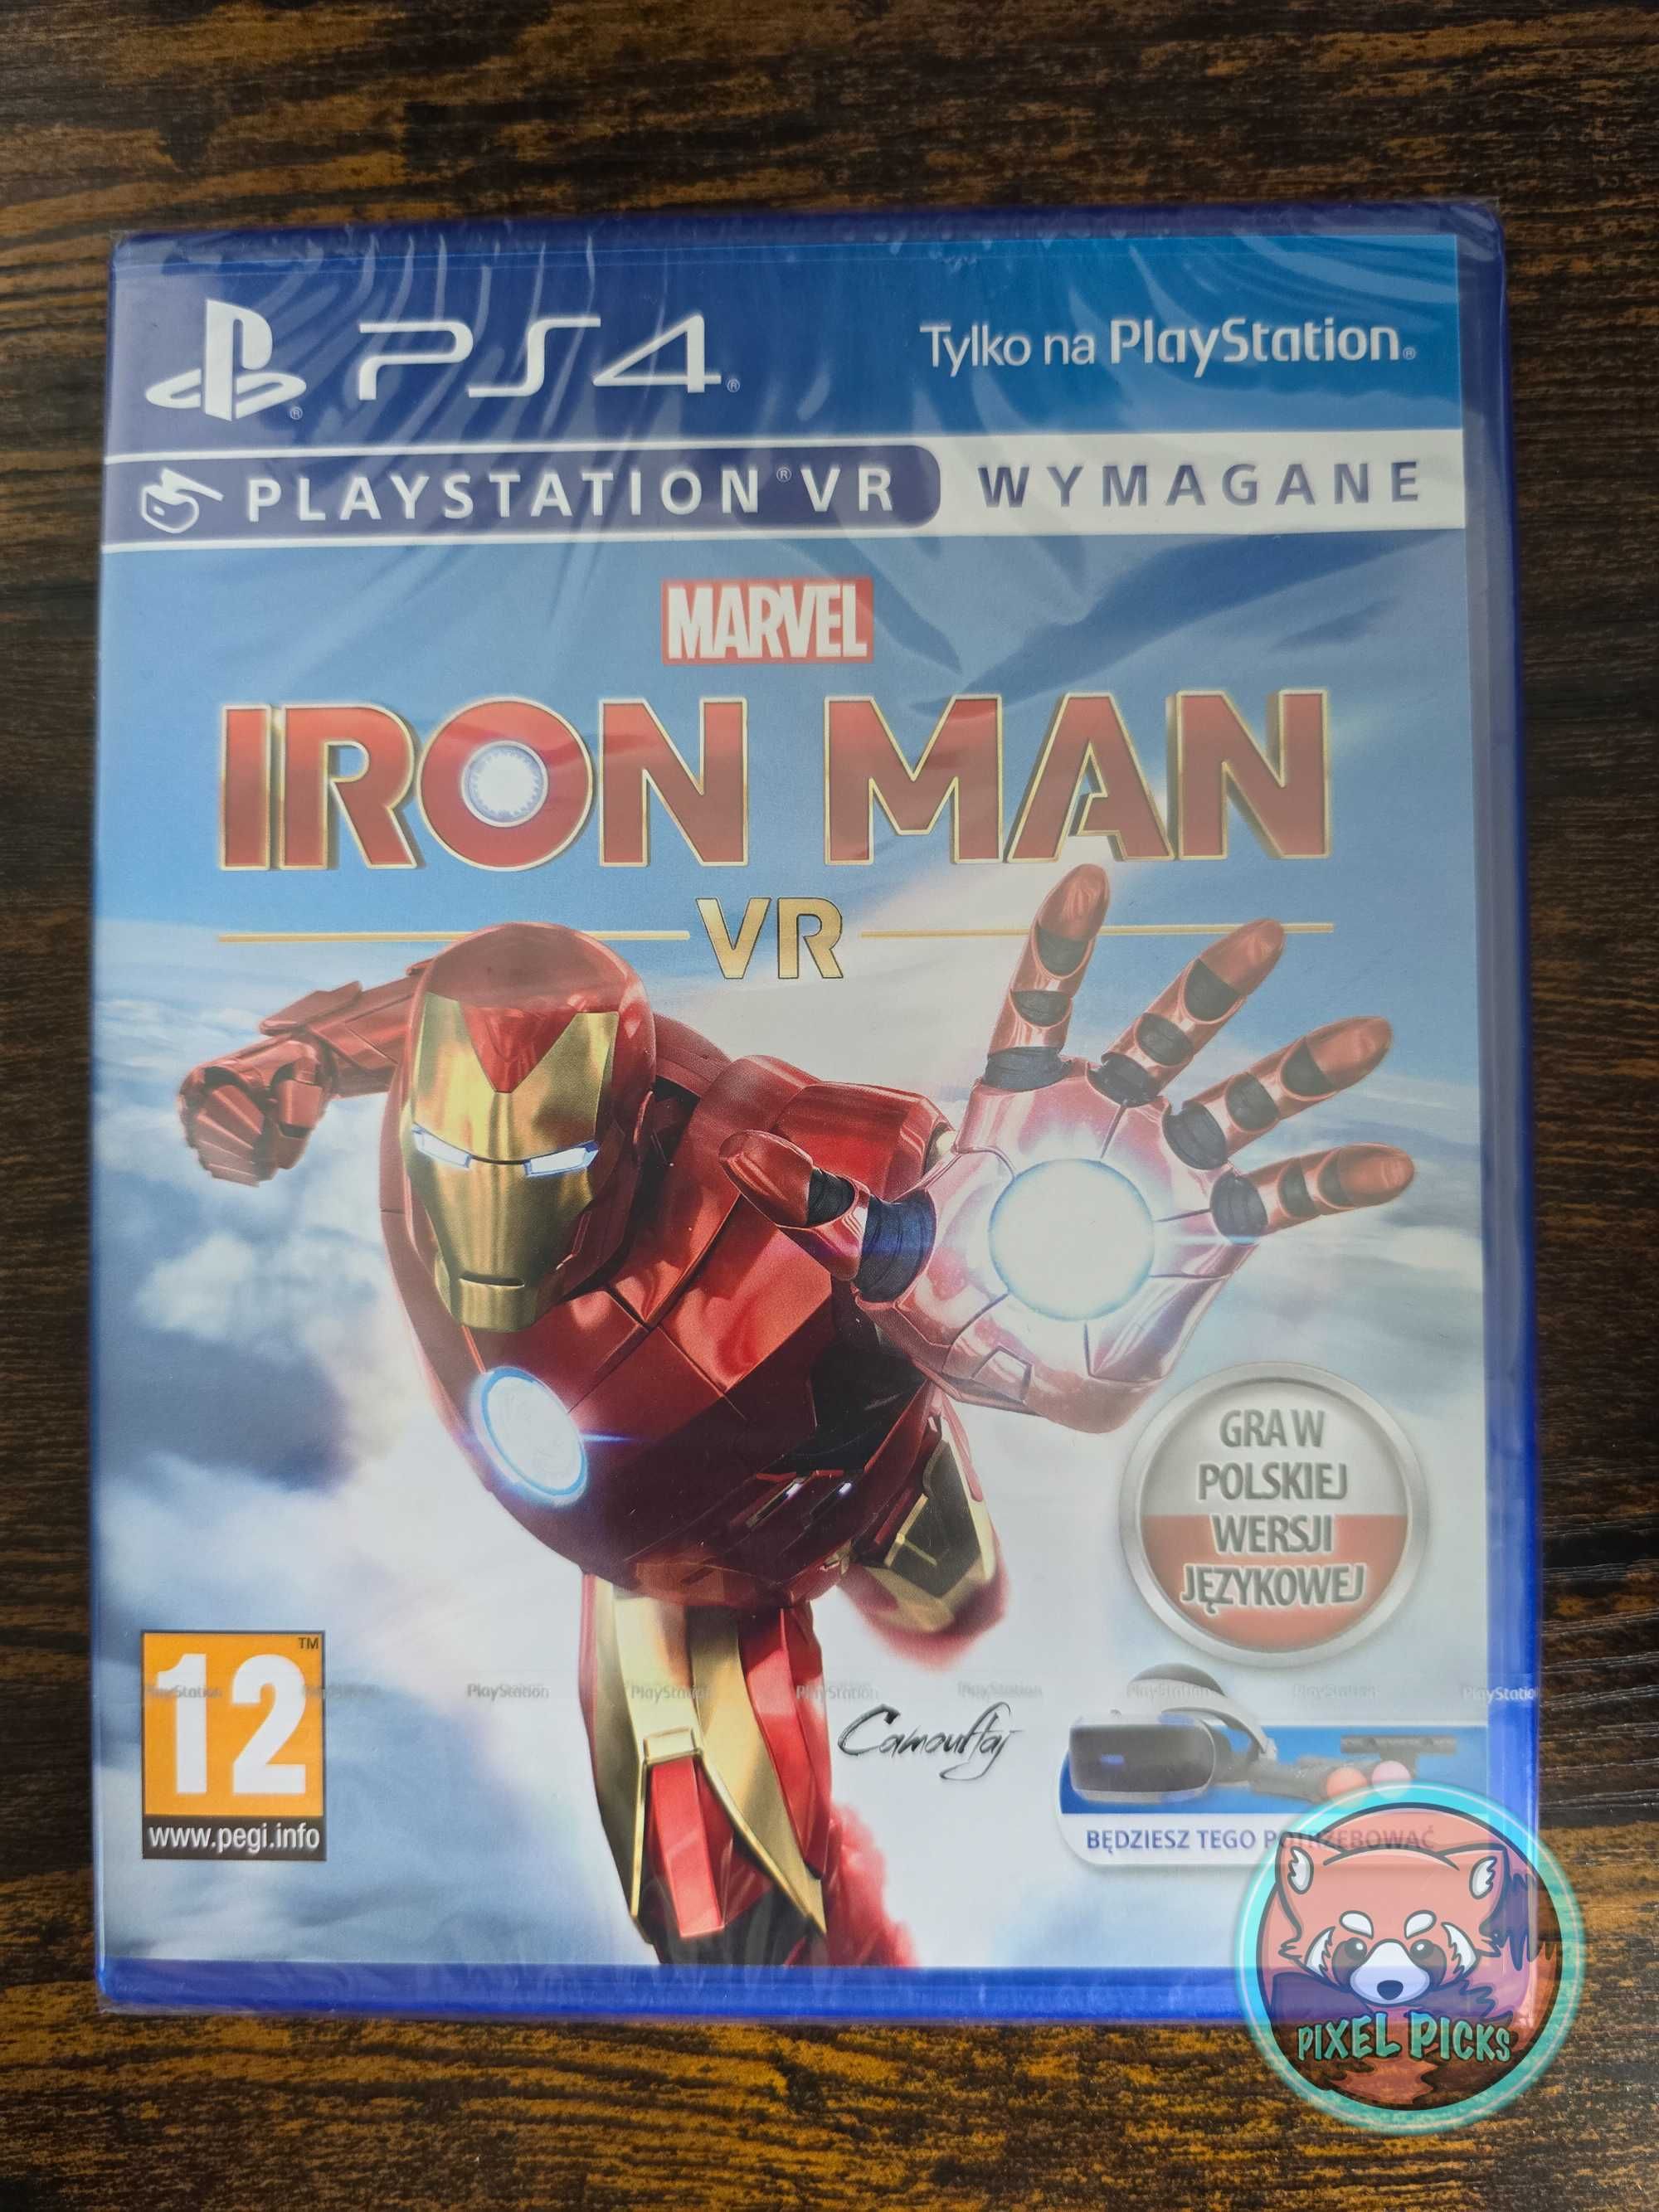 Iron man VR ps4 playstation 4